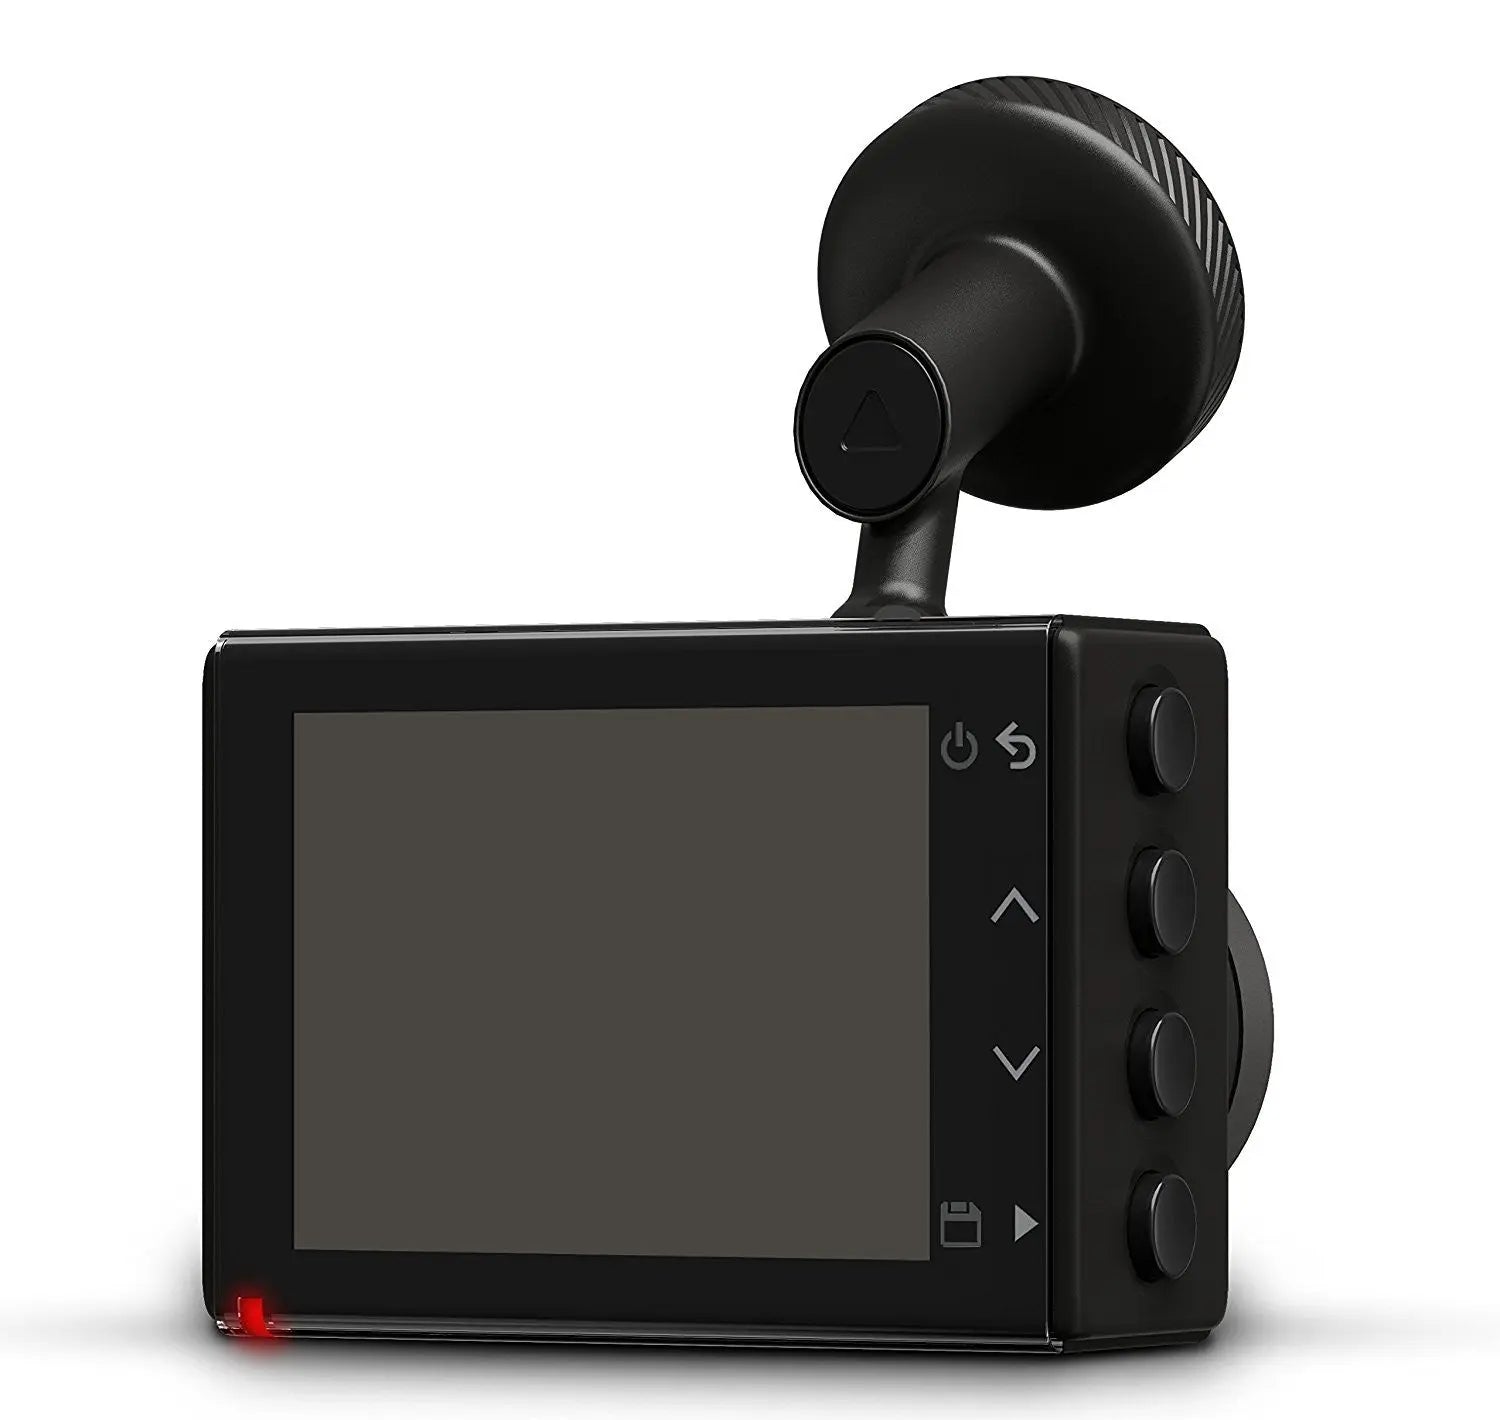 Garmin Dash Cam 45 - Dashboard camera - 1080p - 2.1 MP - Wi-Fi - G-Sensor